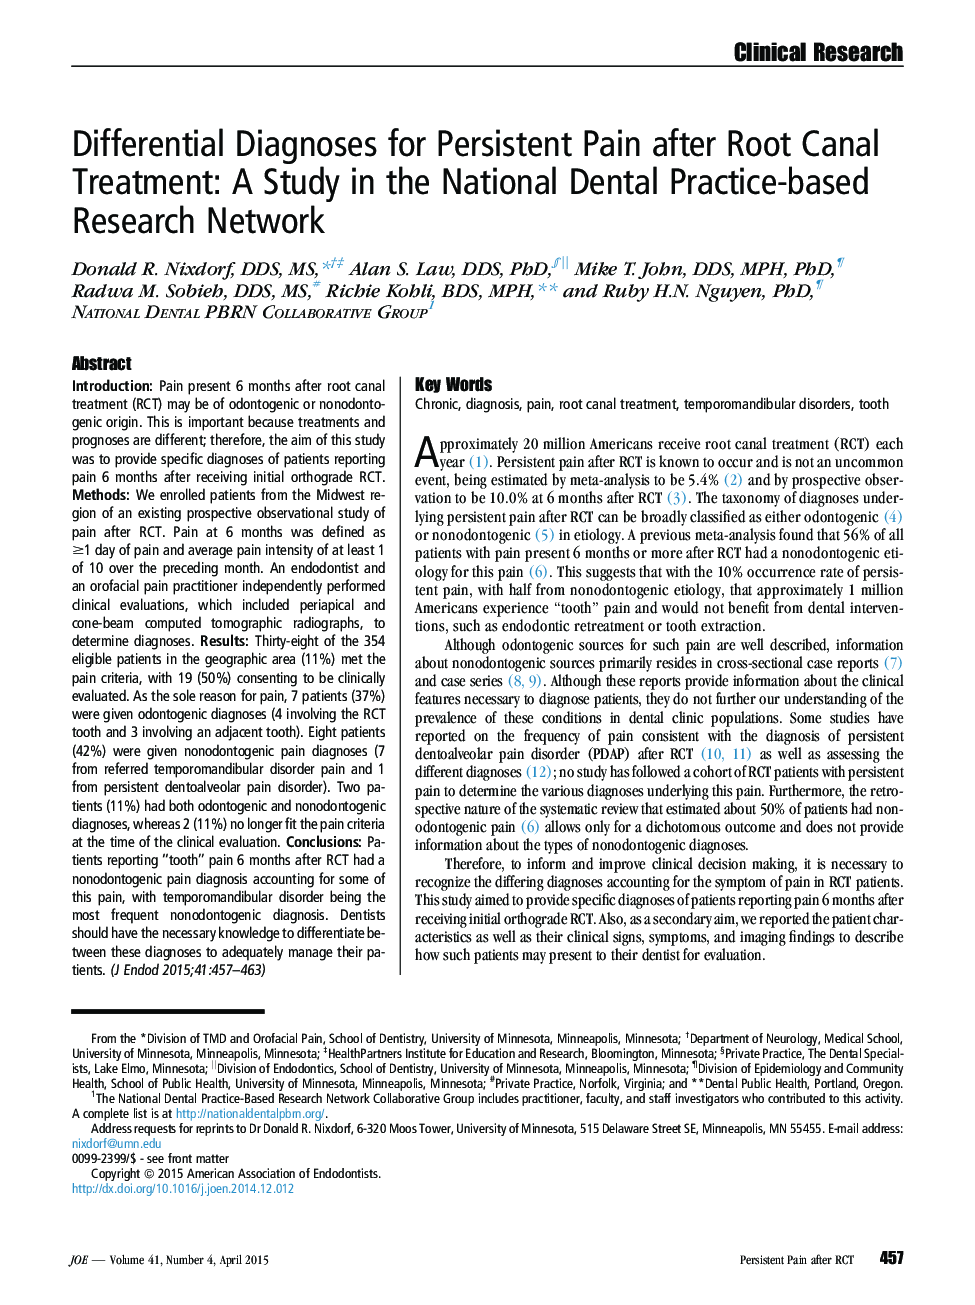 تشخیص دیفرانسیل برای درد ماندگار پس از درمان کانال ریشه: مطالعه در شبکه ملی تحقیقات دندانپزشکی 